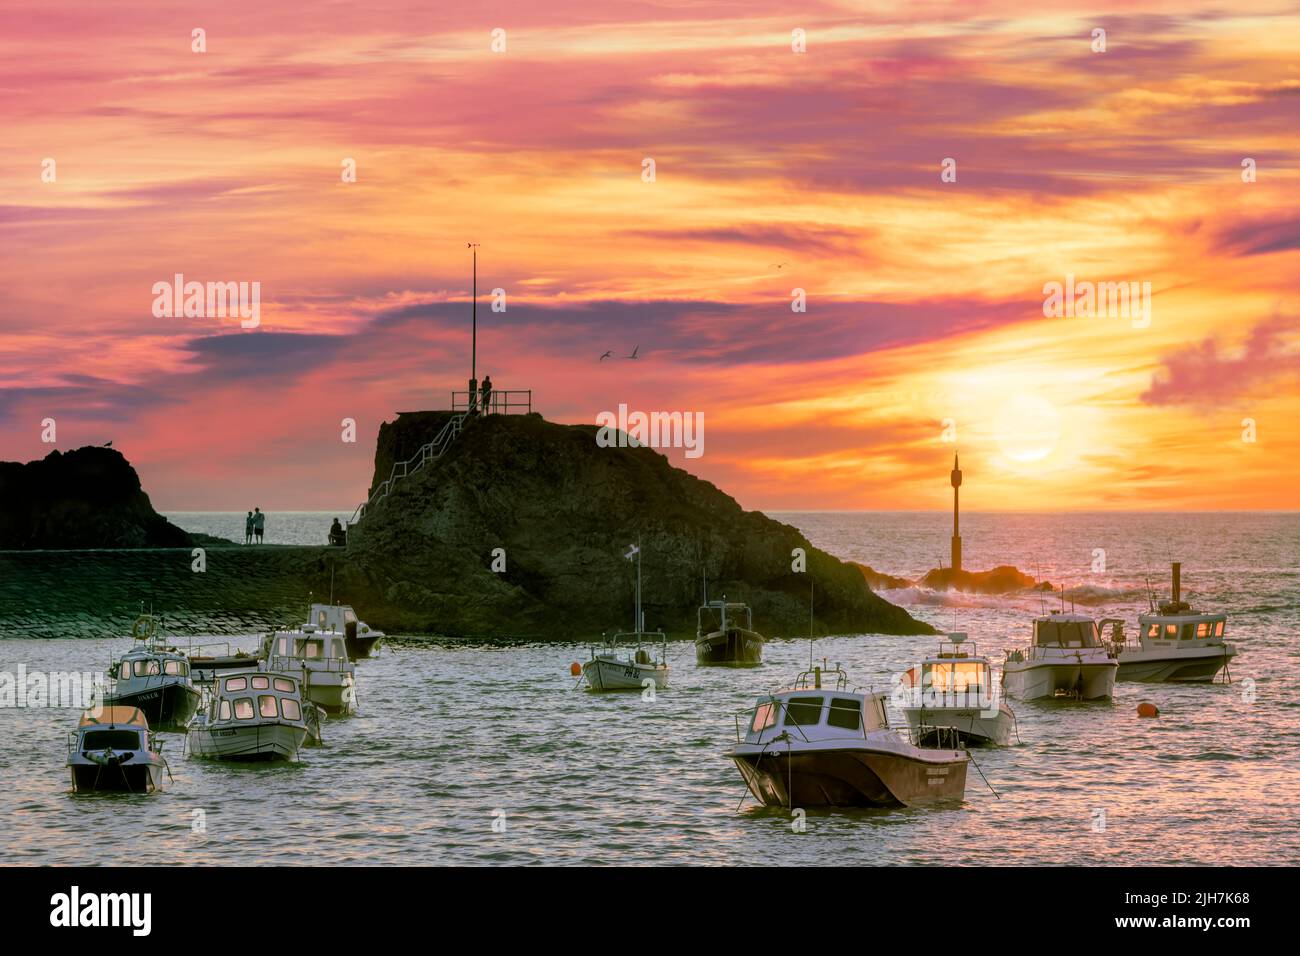 Dopo una giornata molto calda di luglio sulla costa della Cornovaglia, il cielo si trasforma in sfumature di rosa e arancione, mentre le persone si riuniscono per guardare il sole tramontare attraverso la foschia sul Foto Stock